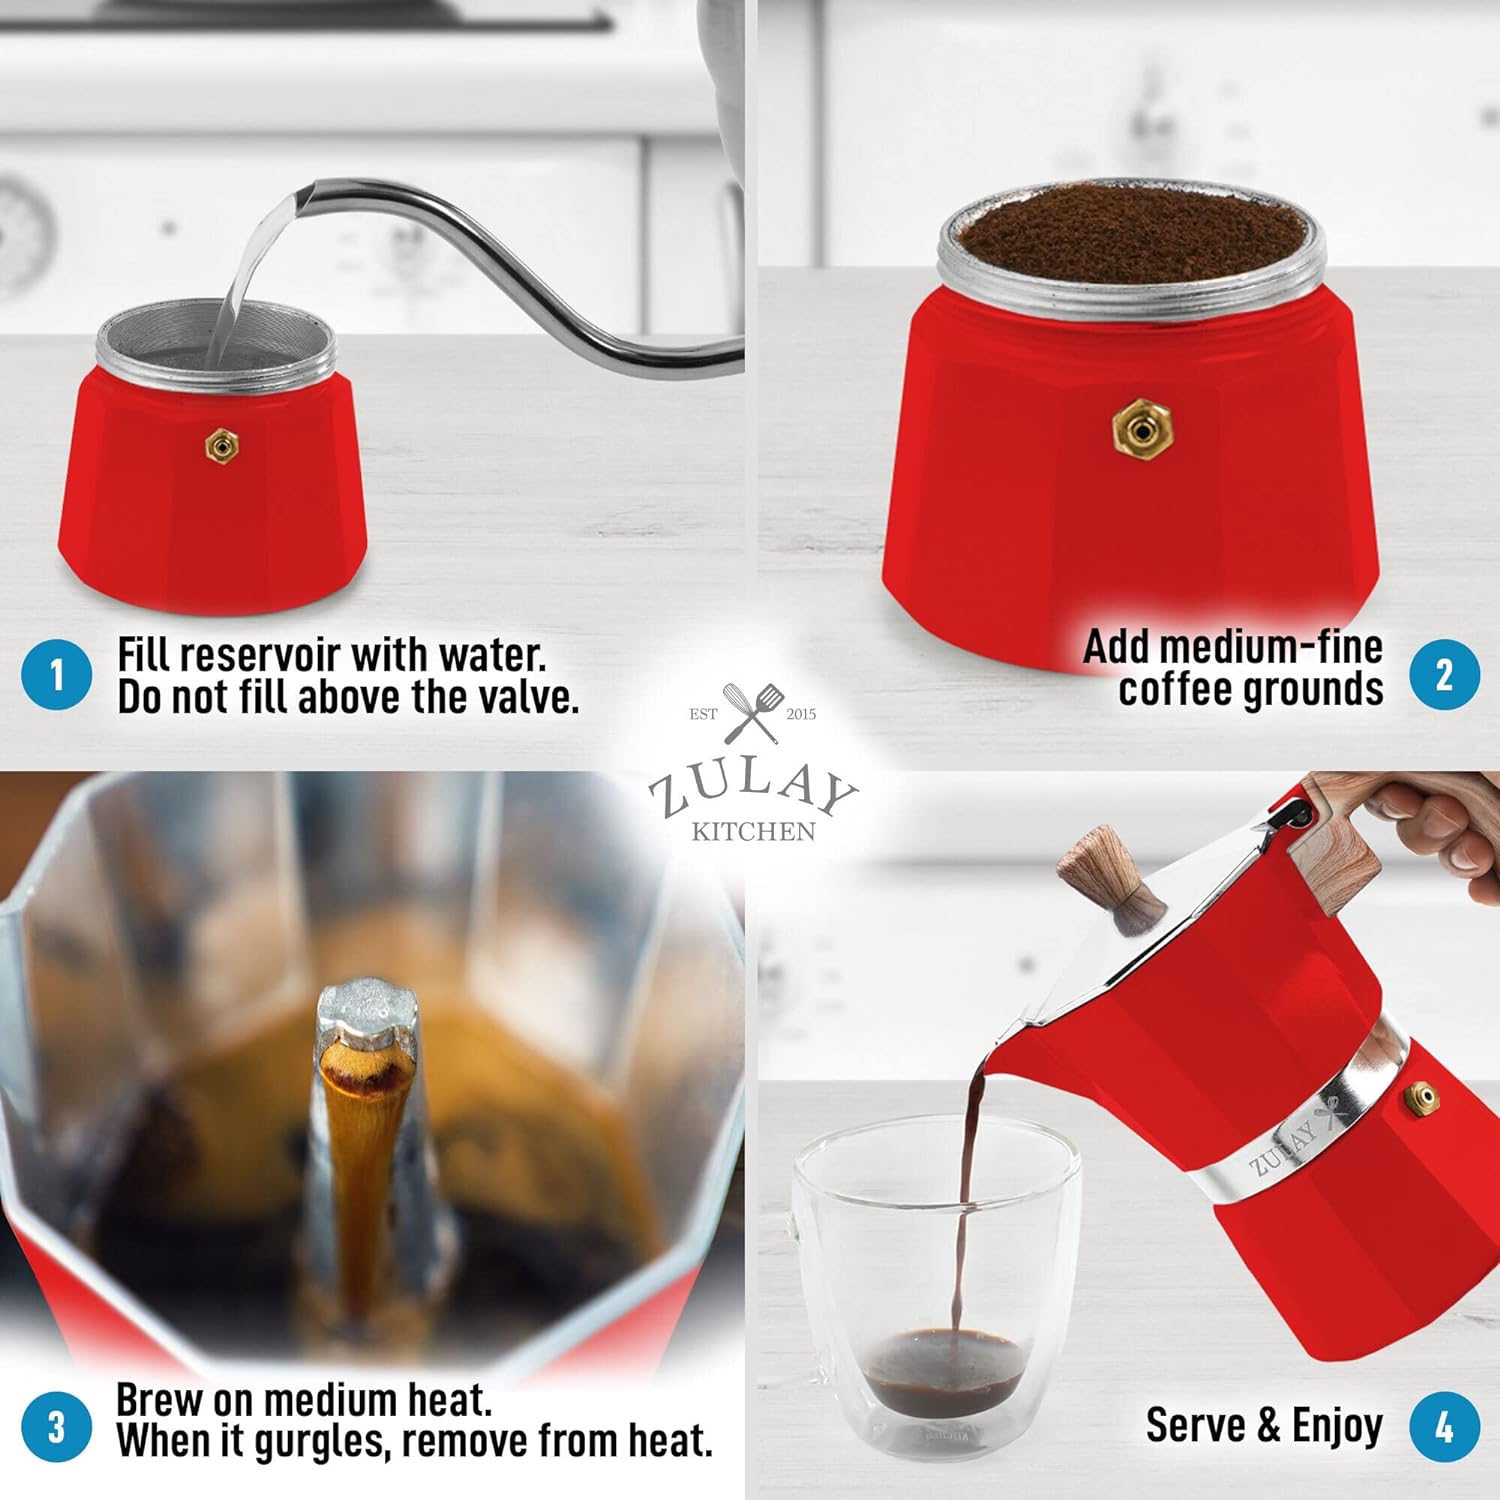 Stovetop Espresso Cup Moka Pot - 3 Cup